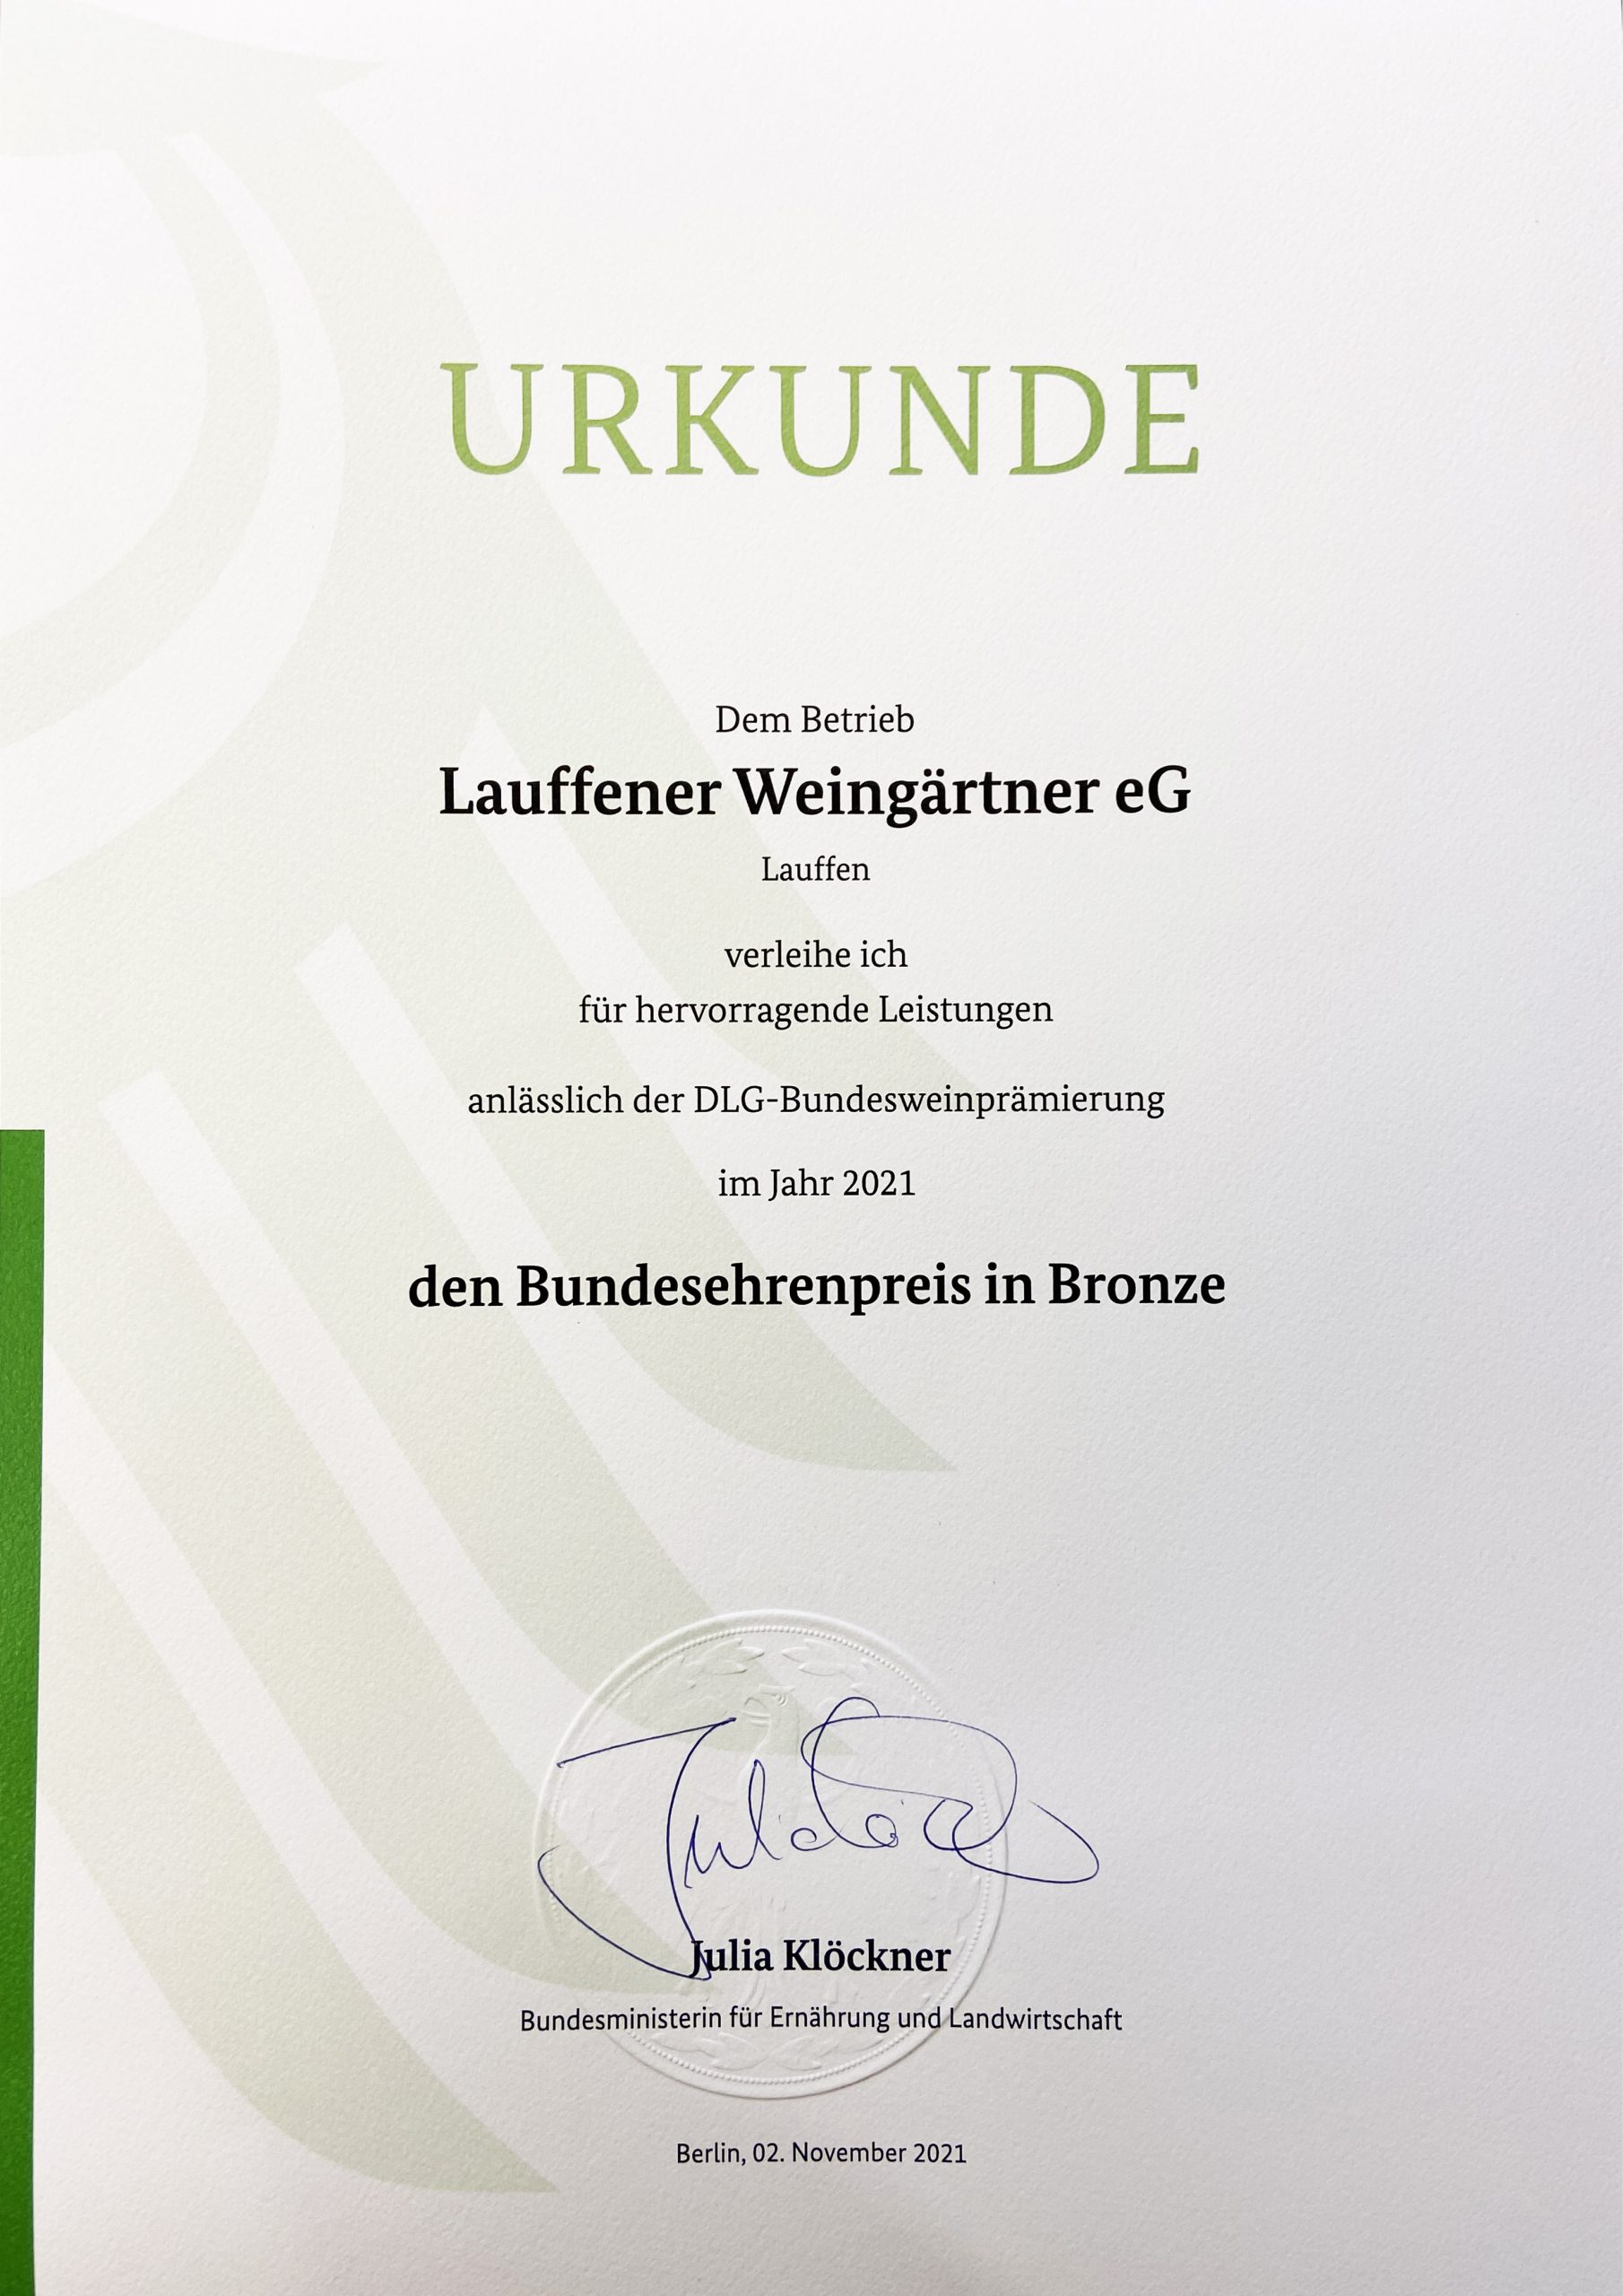 Urkunde der Lauffener Weingärtner zum Bundesehrenpreis in Bronze der DLG